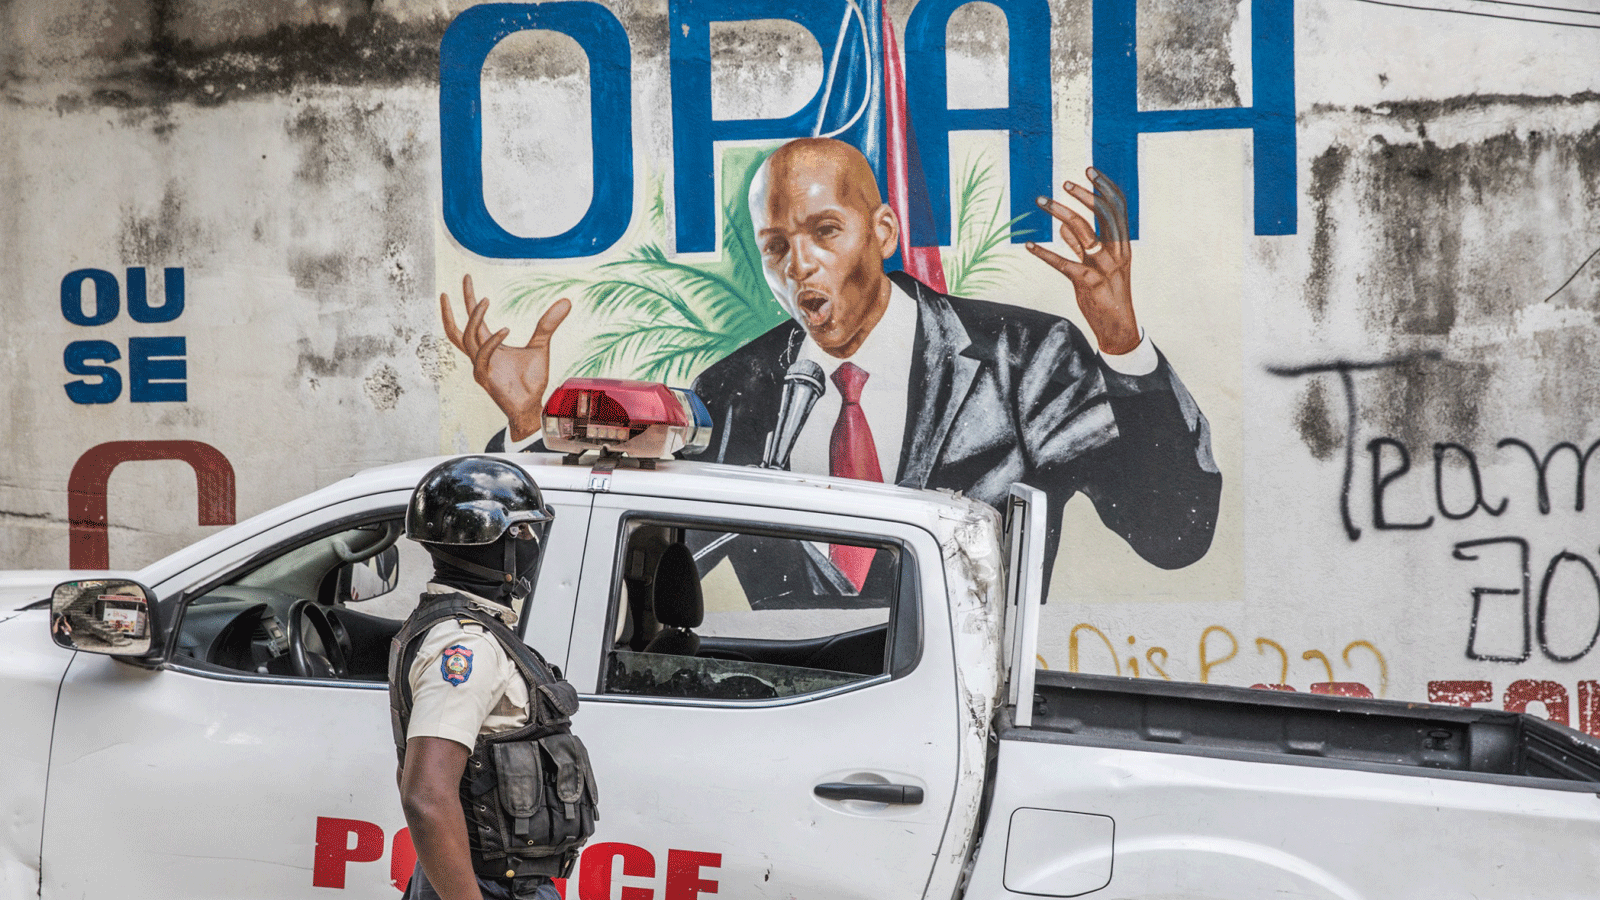 ضابط شرطة يقف بجانب جدارية للرئيس الهايتي الراحل جوفينيل مويس بعد اغتياله في بورت أو برنس في 15 تموز/يوليو 2021 